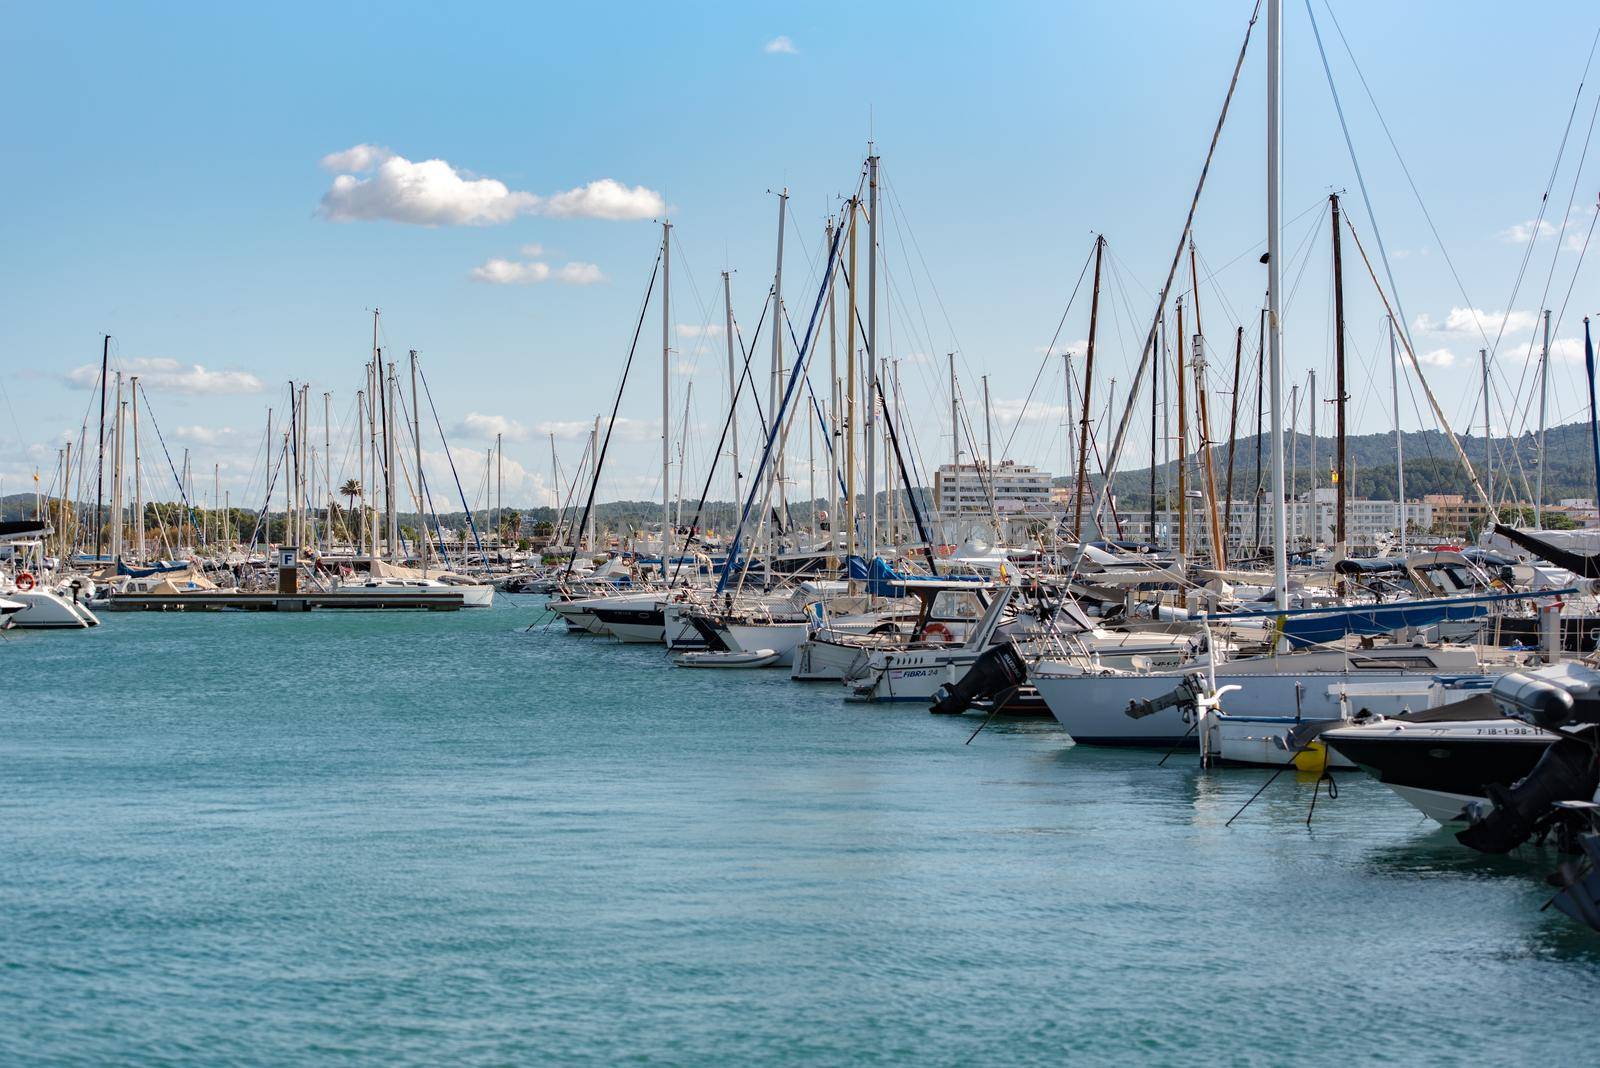 Sant Antoni de Portmany, Ibiza, Spain : NOV 8 2019 : Sunny day in the port of Sant Antoni de POrtmany, Ibiza, Spain. by martinscphoto